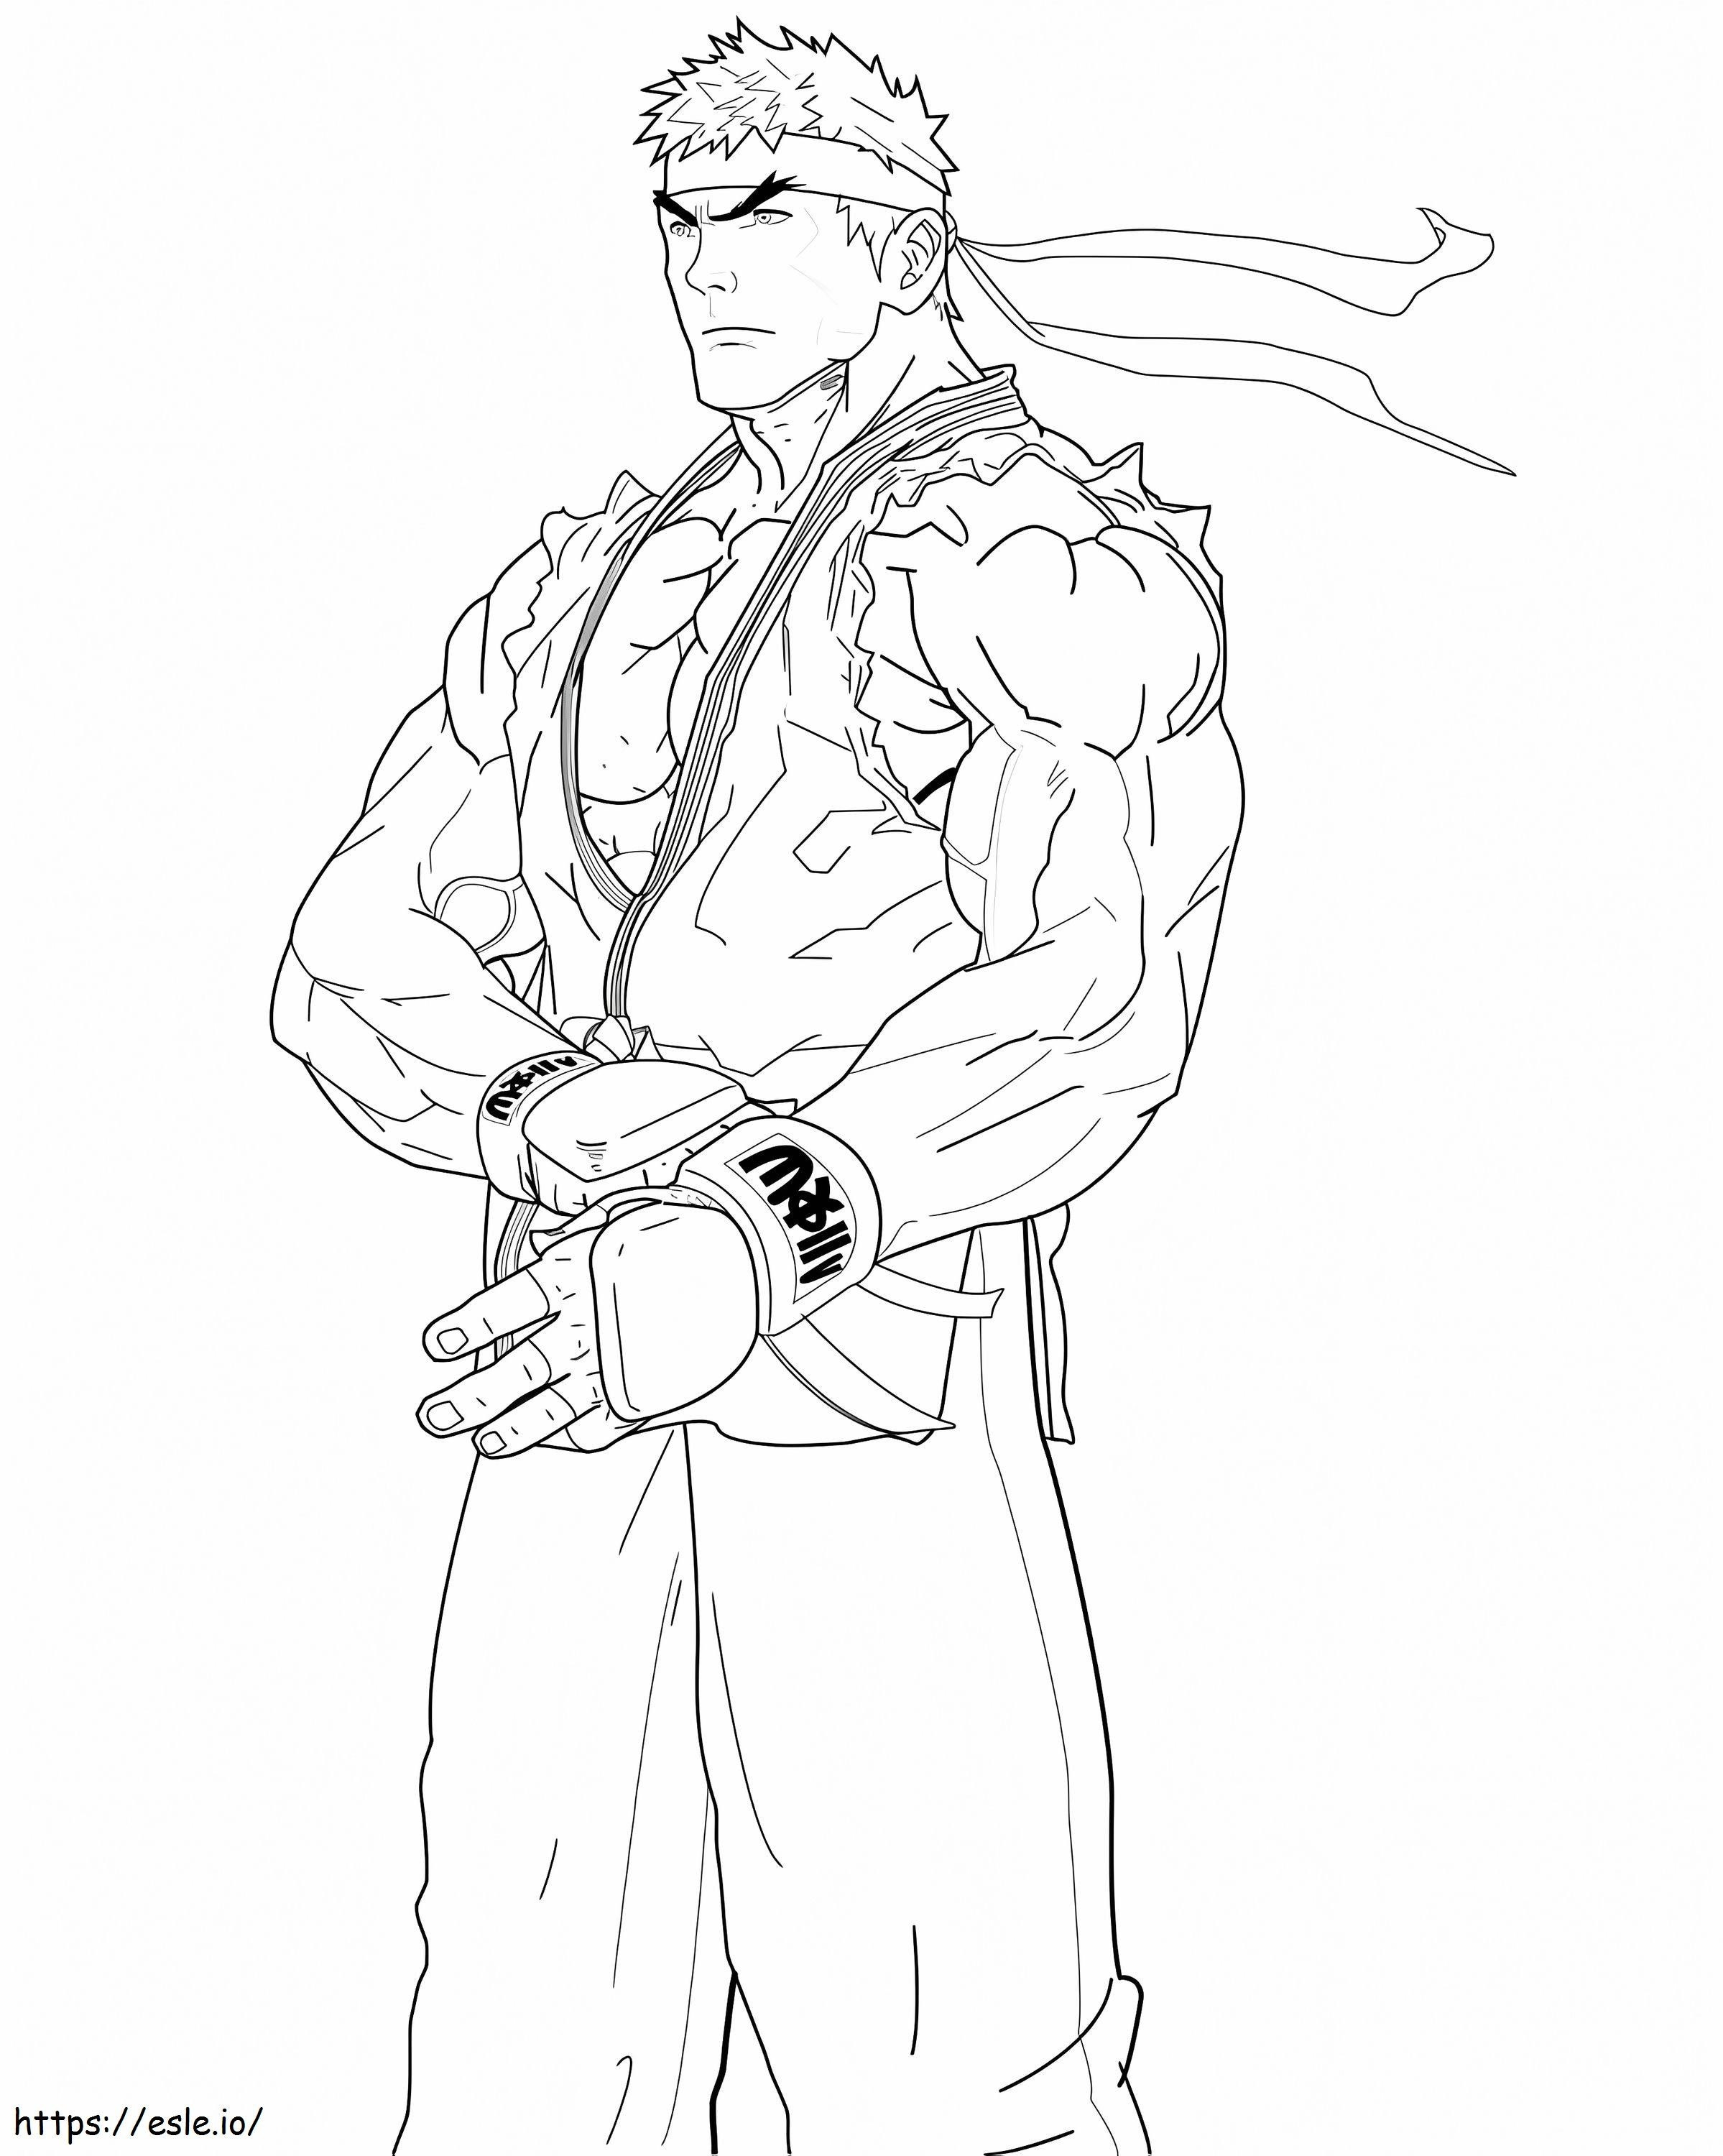 Fajny Ryu Street Fighter kolorowanka